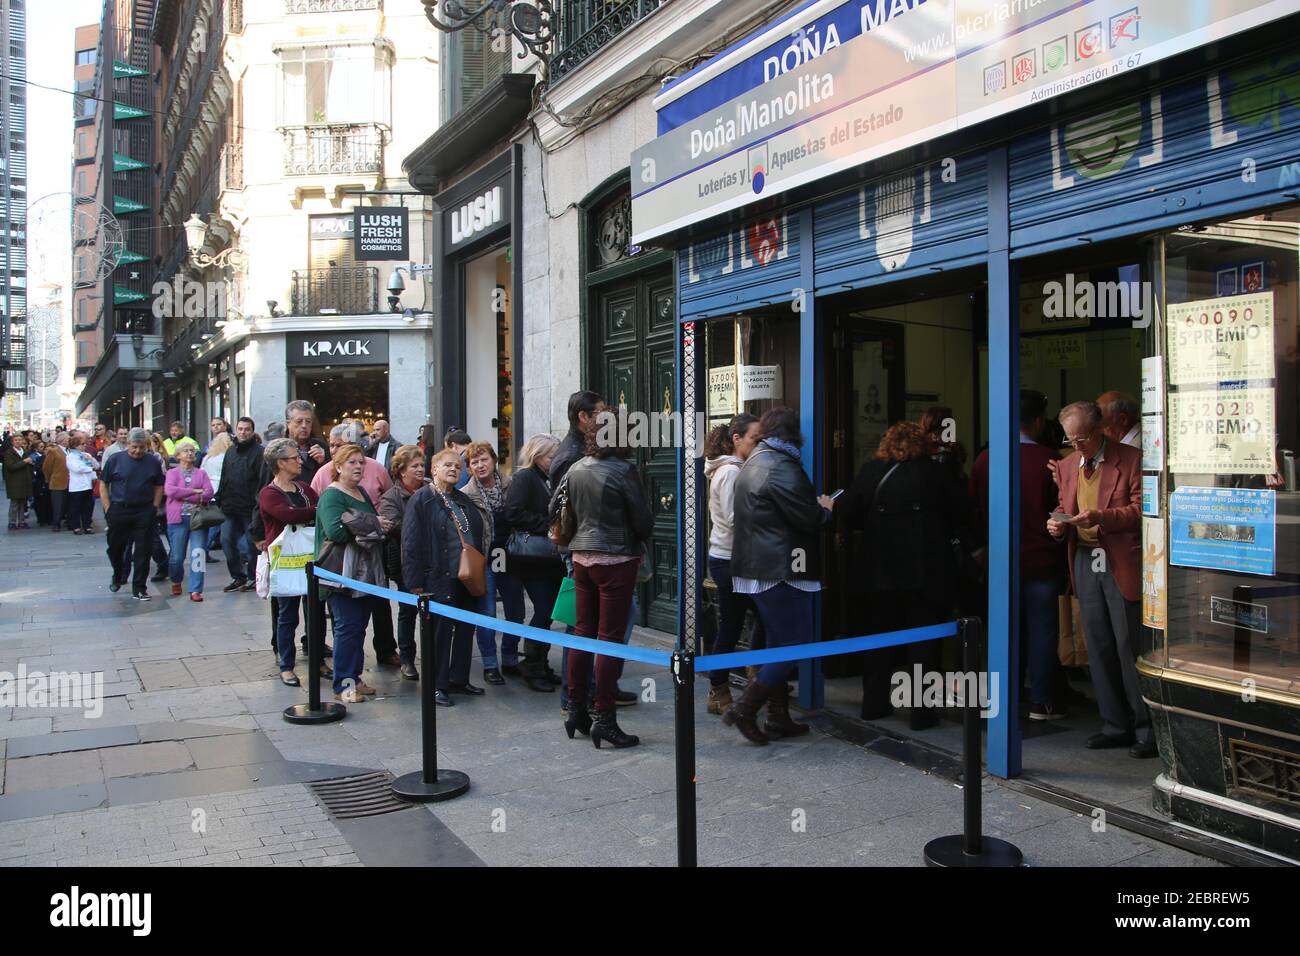 Colas de gente en la tienda de lotería Dona Manolita cerca de la Puerta del  Sol en el centro de Madrid, famosa por la venta de billetes afortunados  para los bigges españoles